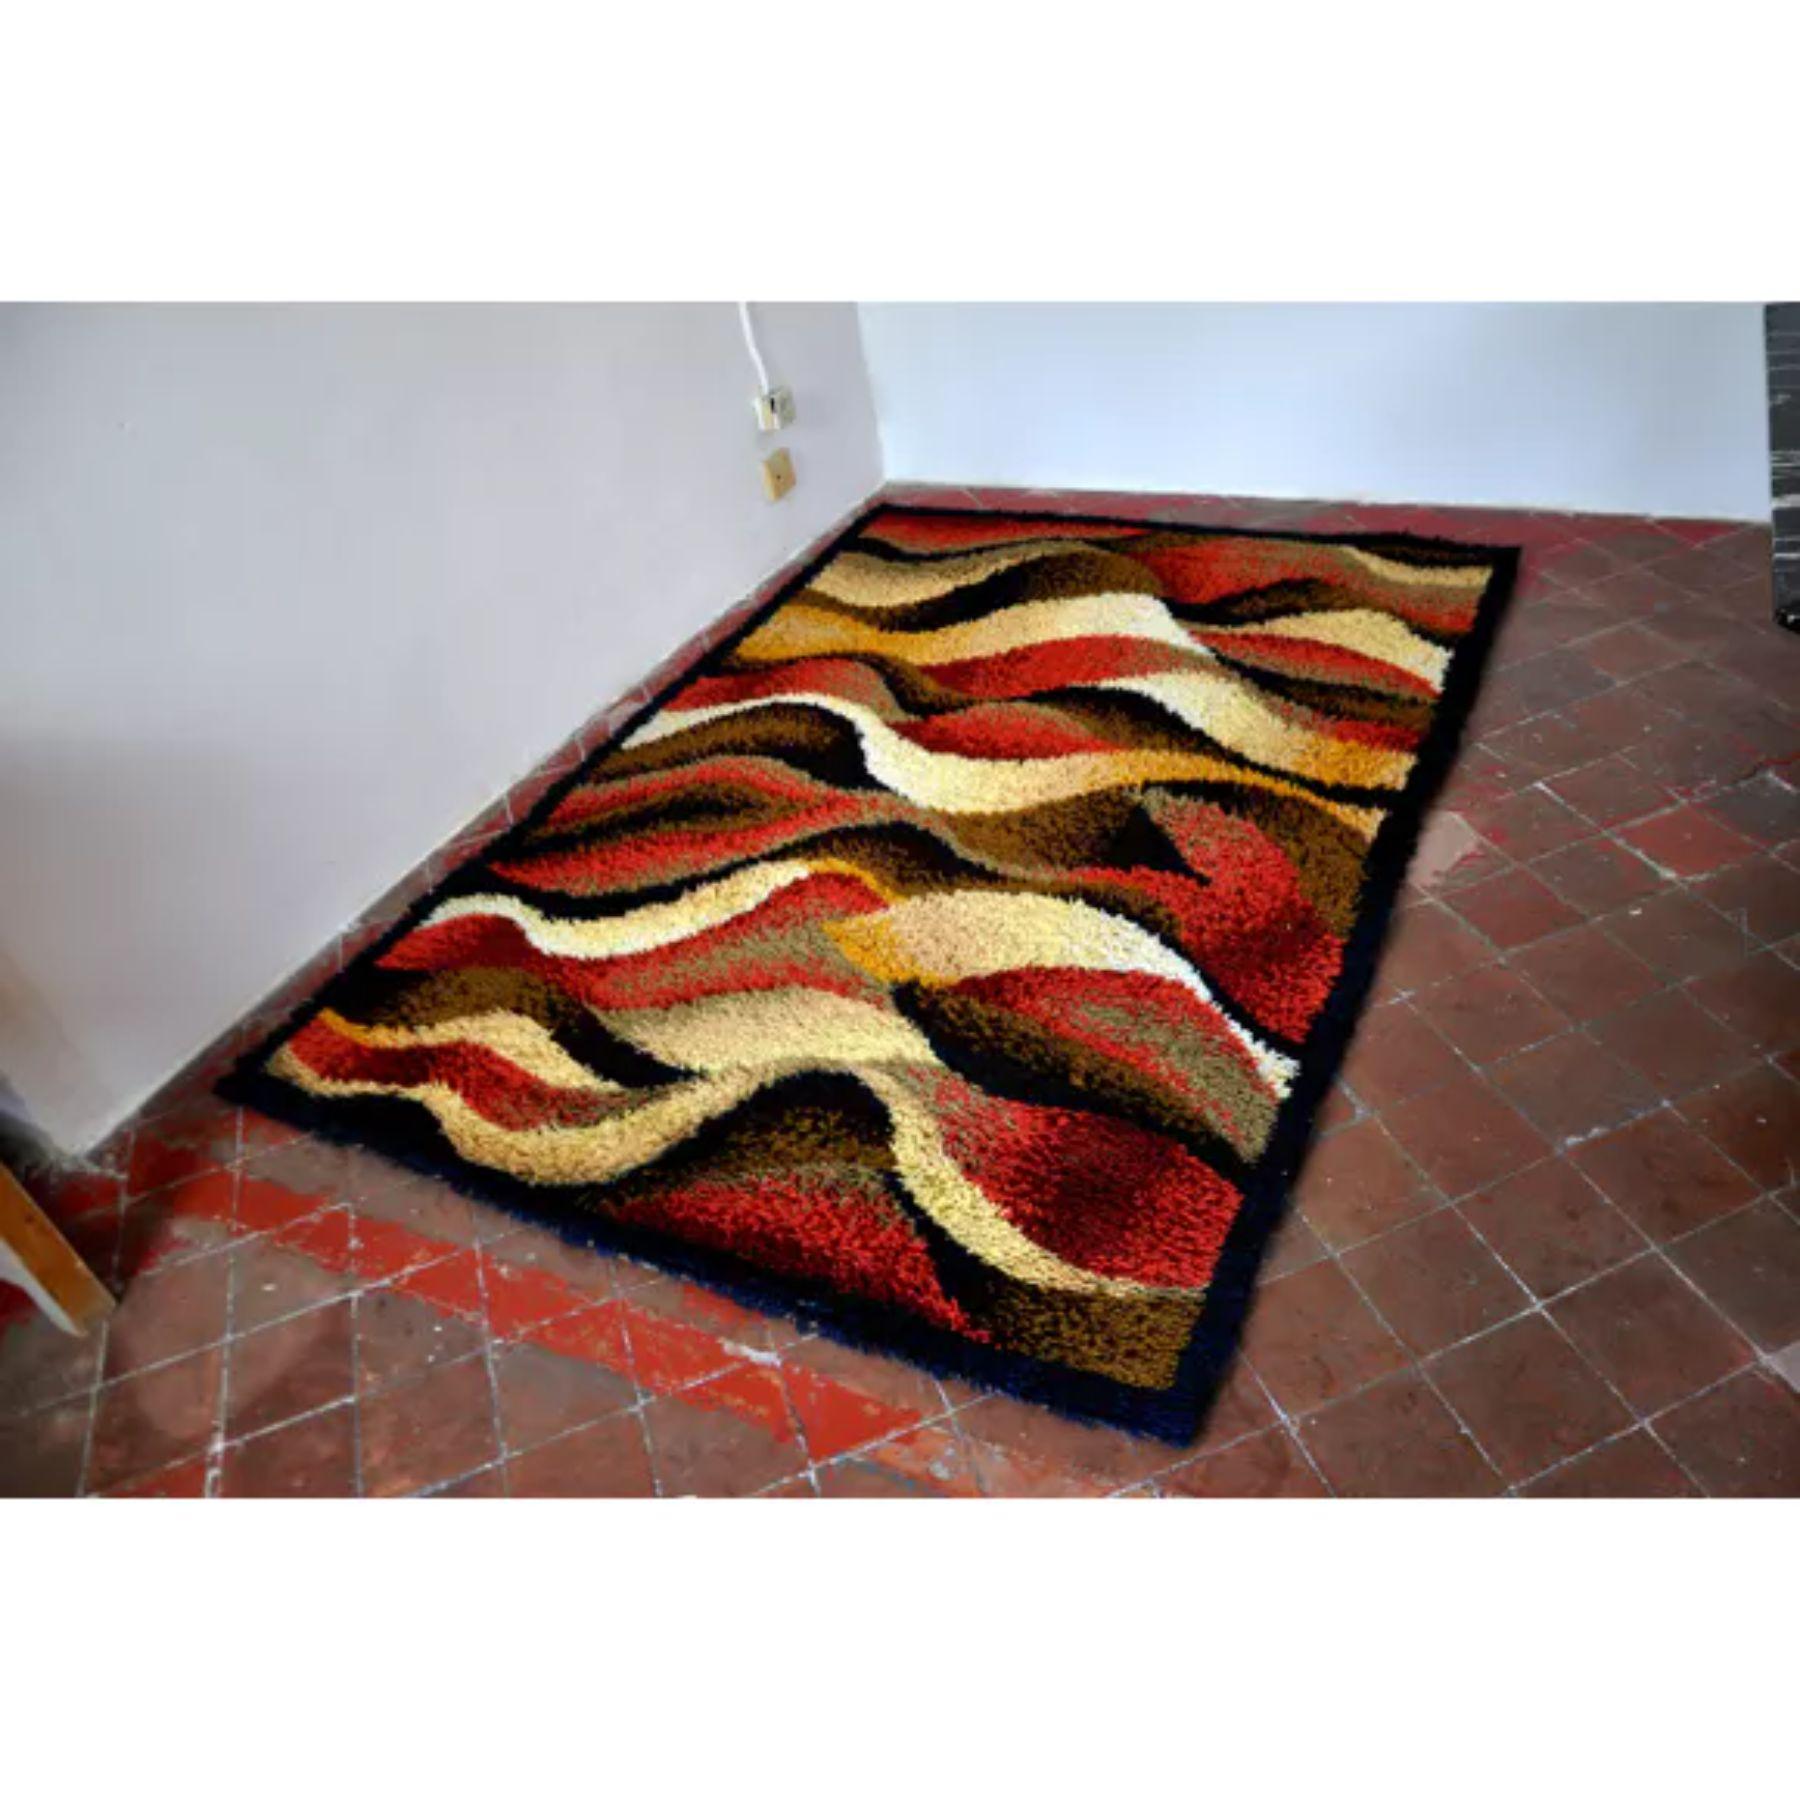 Teppich von der berühmten niederländischen Marke desso aus den 70er Jahren. Hochwertiges 